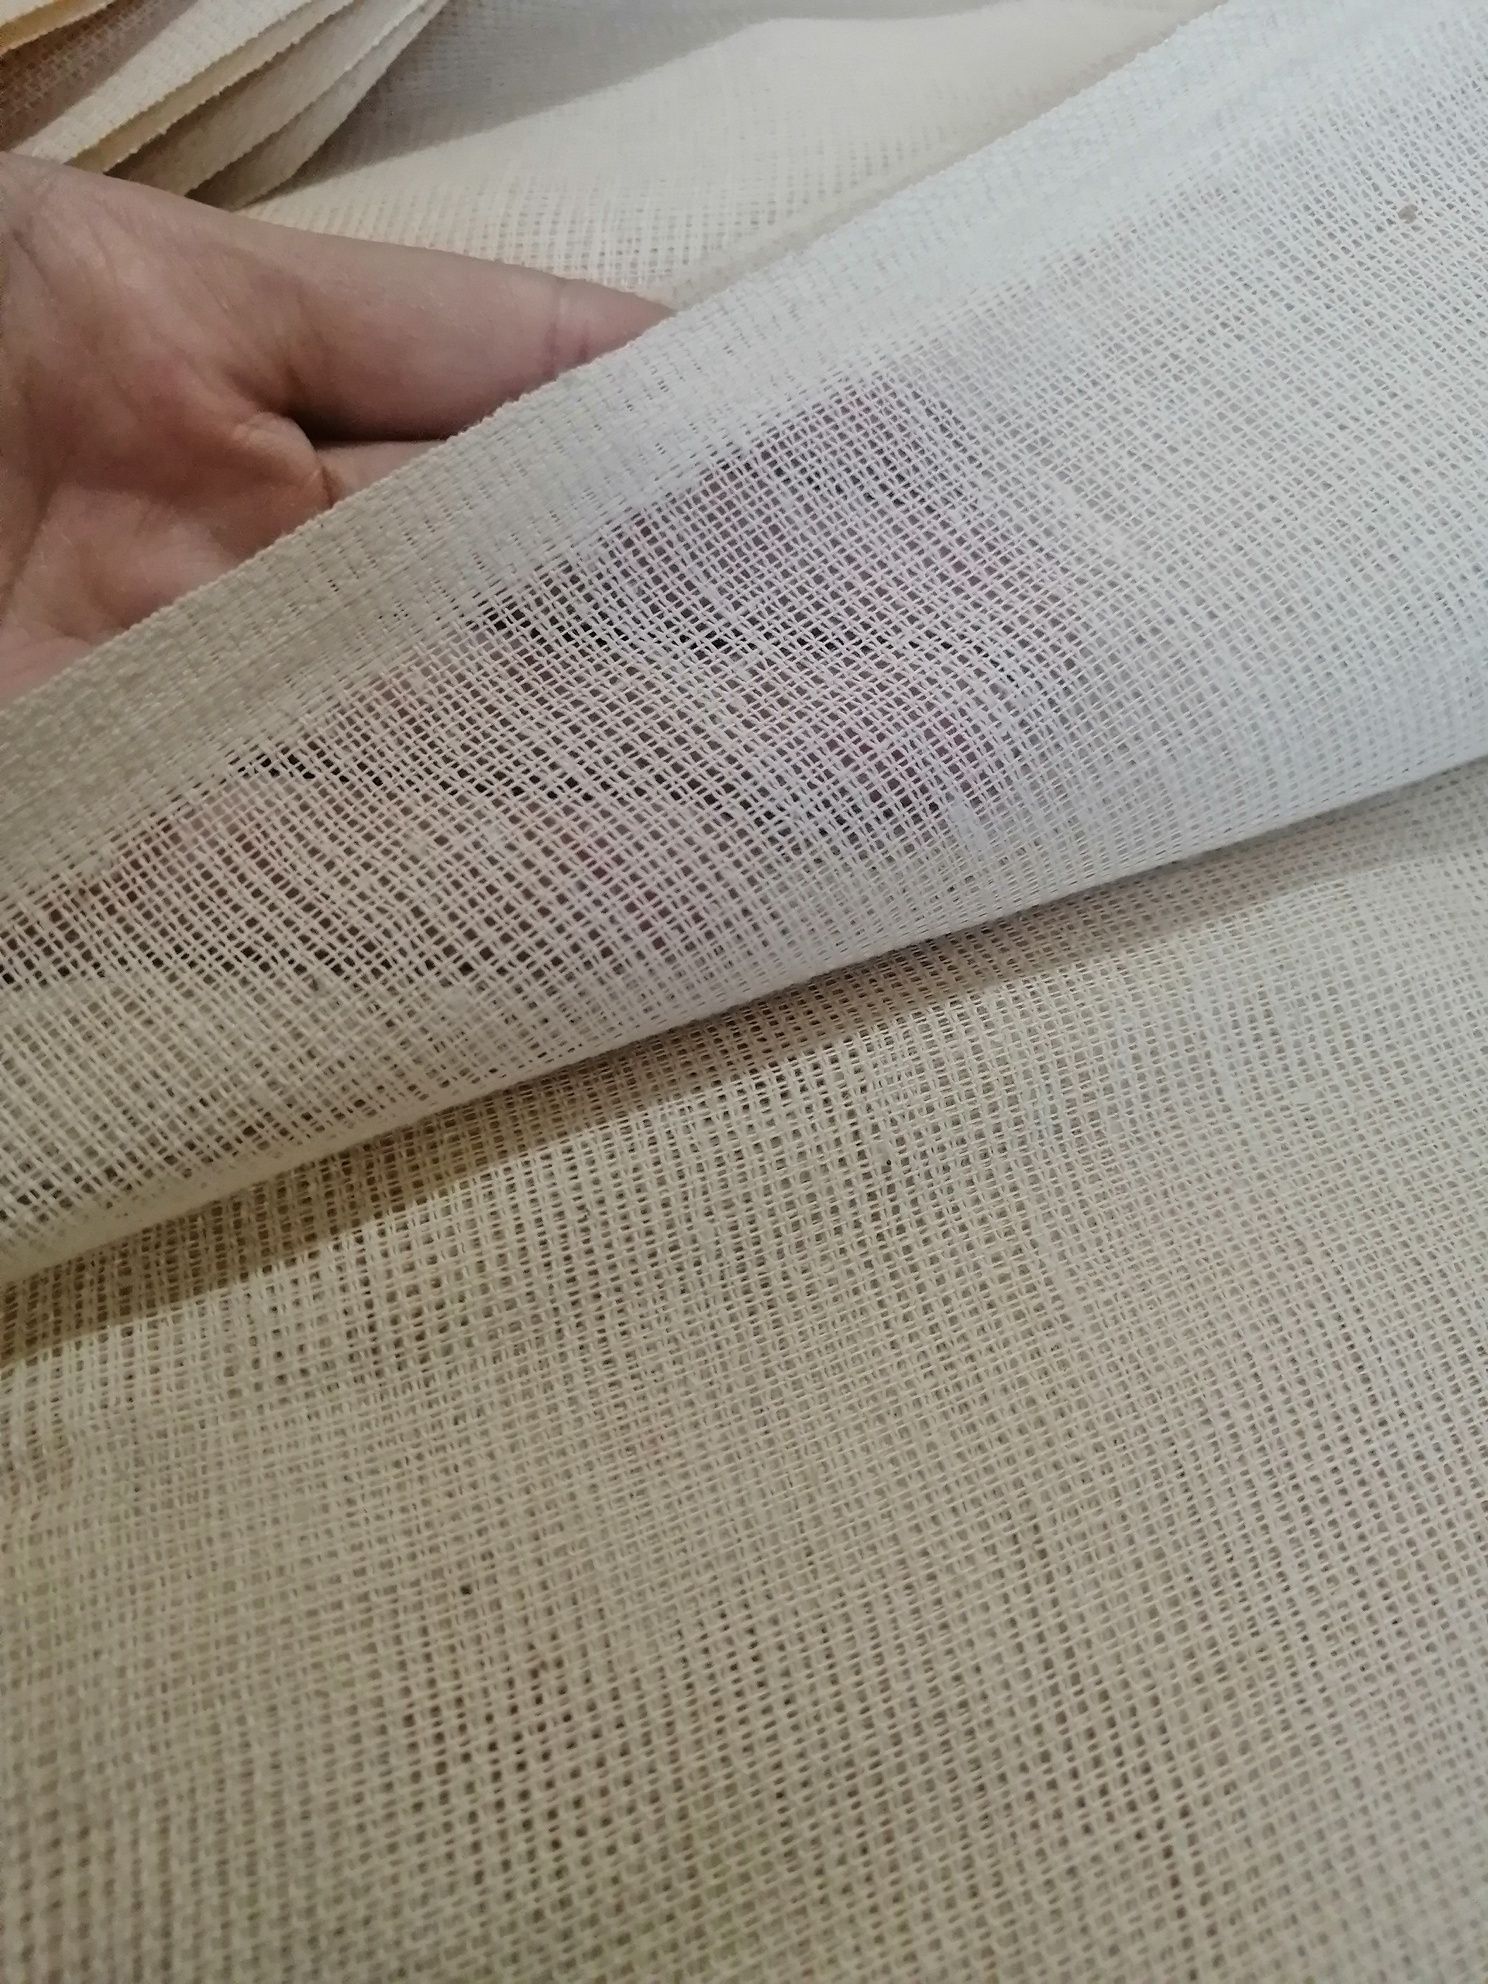 Канва для вышивания - ткань, материал